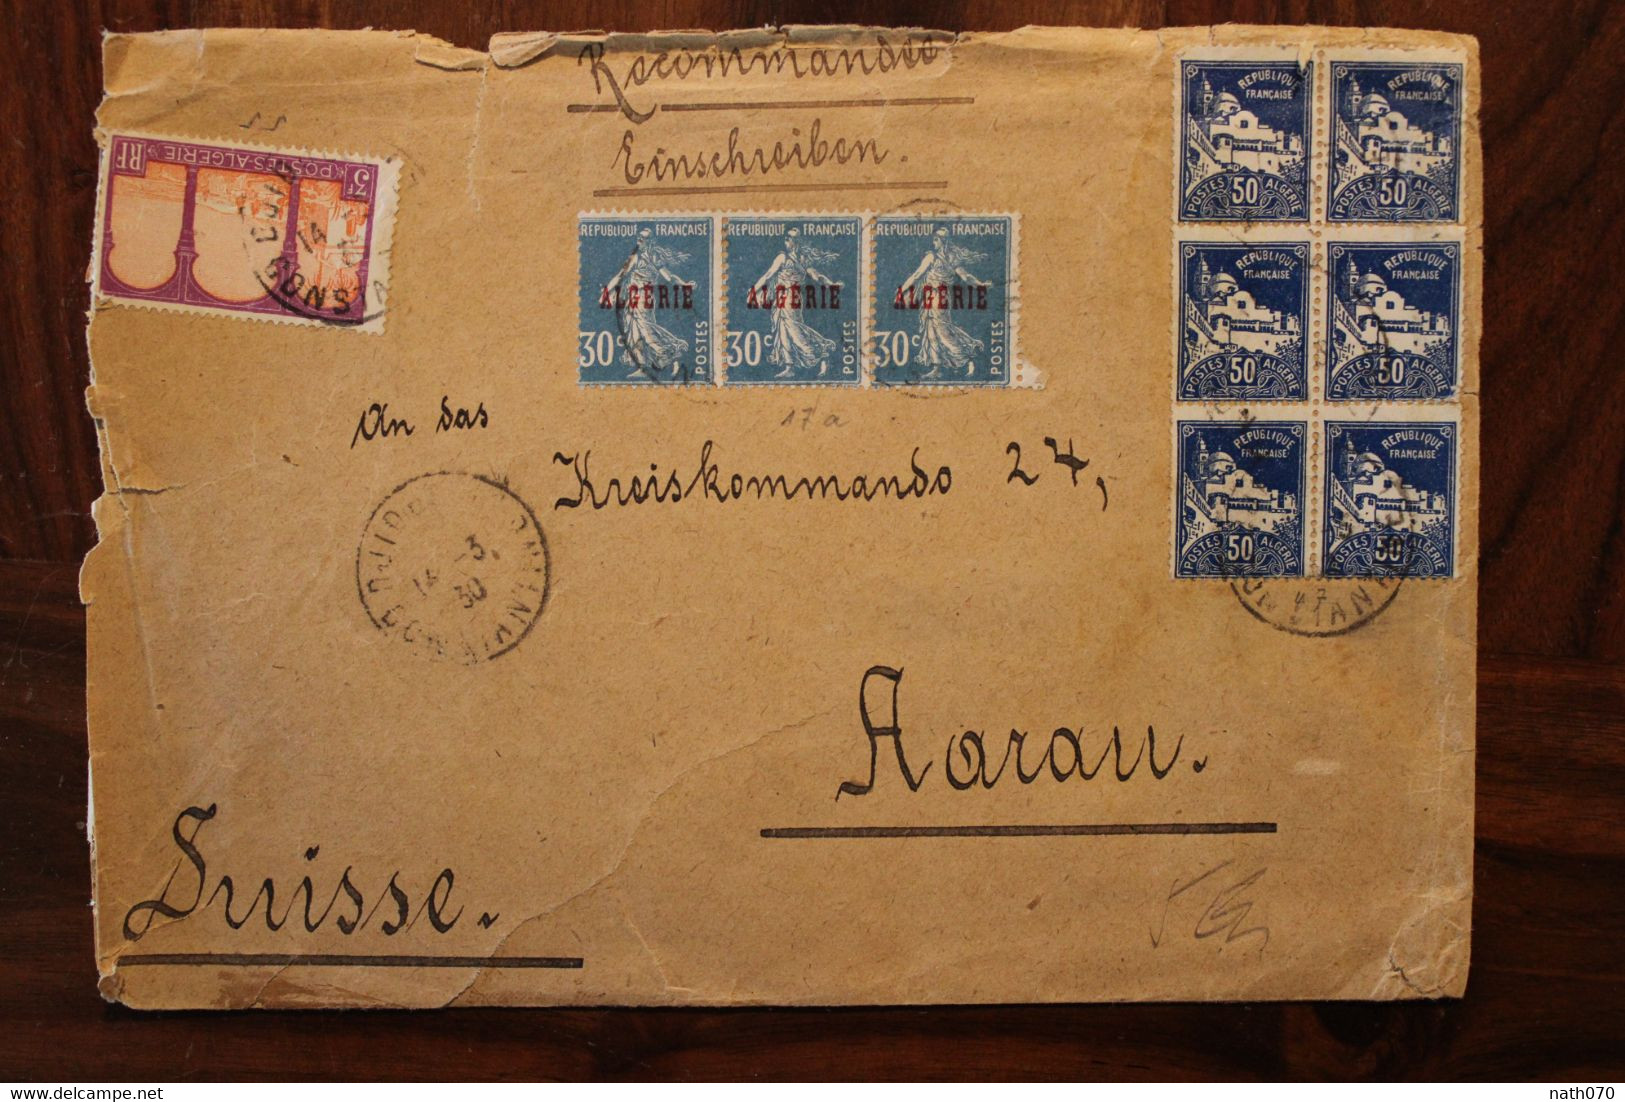 Algérie 1930 FRANCE Djidjelli Jijel Aarau Suisse Colonie Semeuse Bande Triple 25c Bloc 50 Recommandé Einschreiben Cover - Covers & Documents